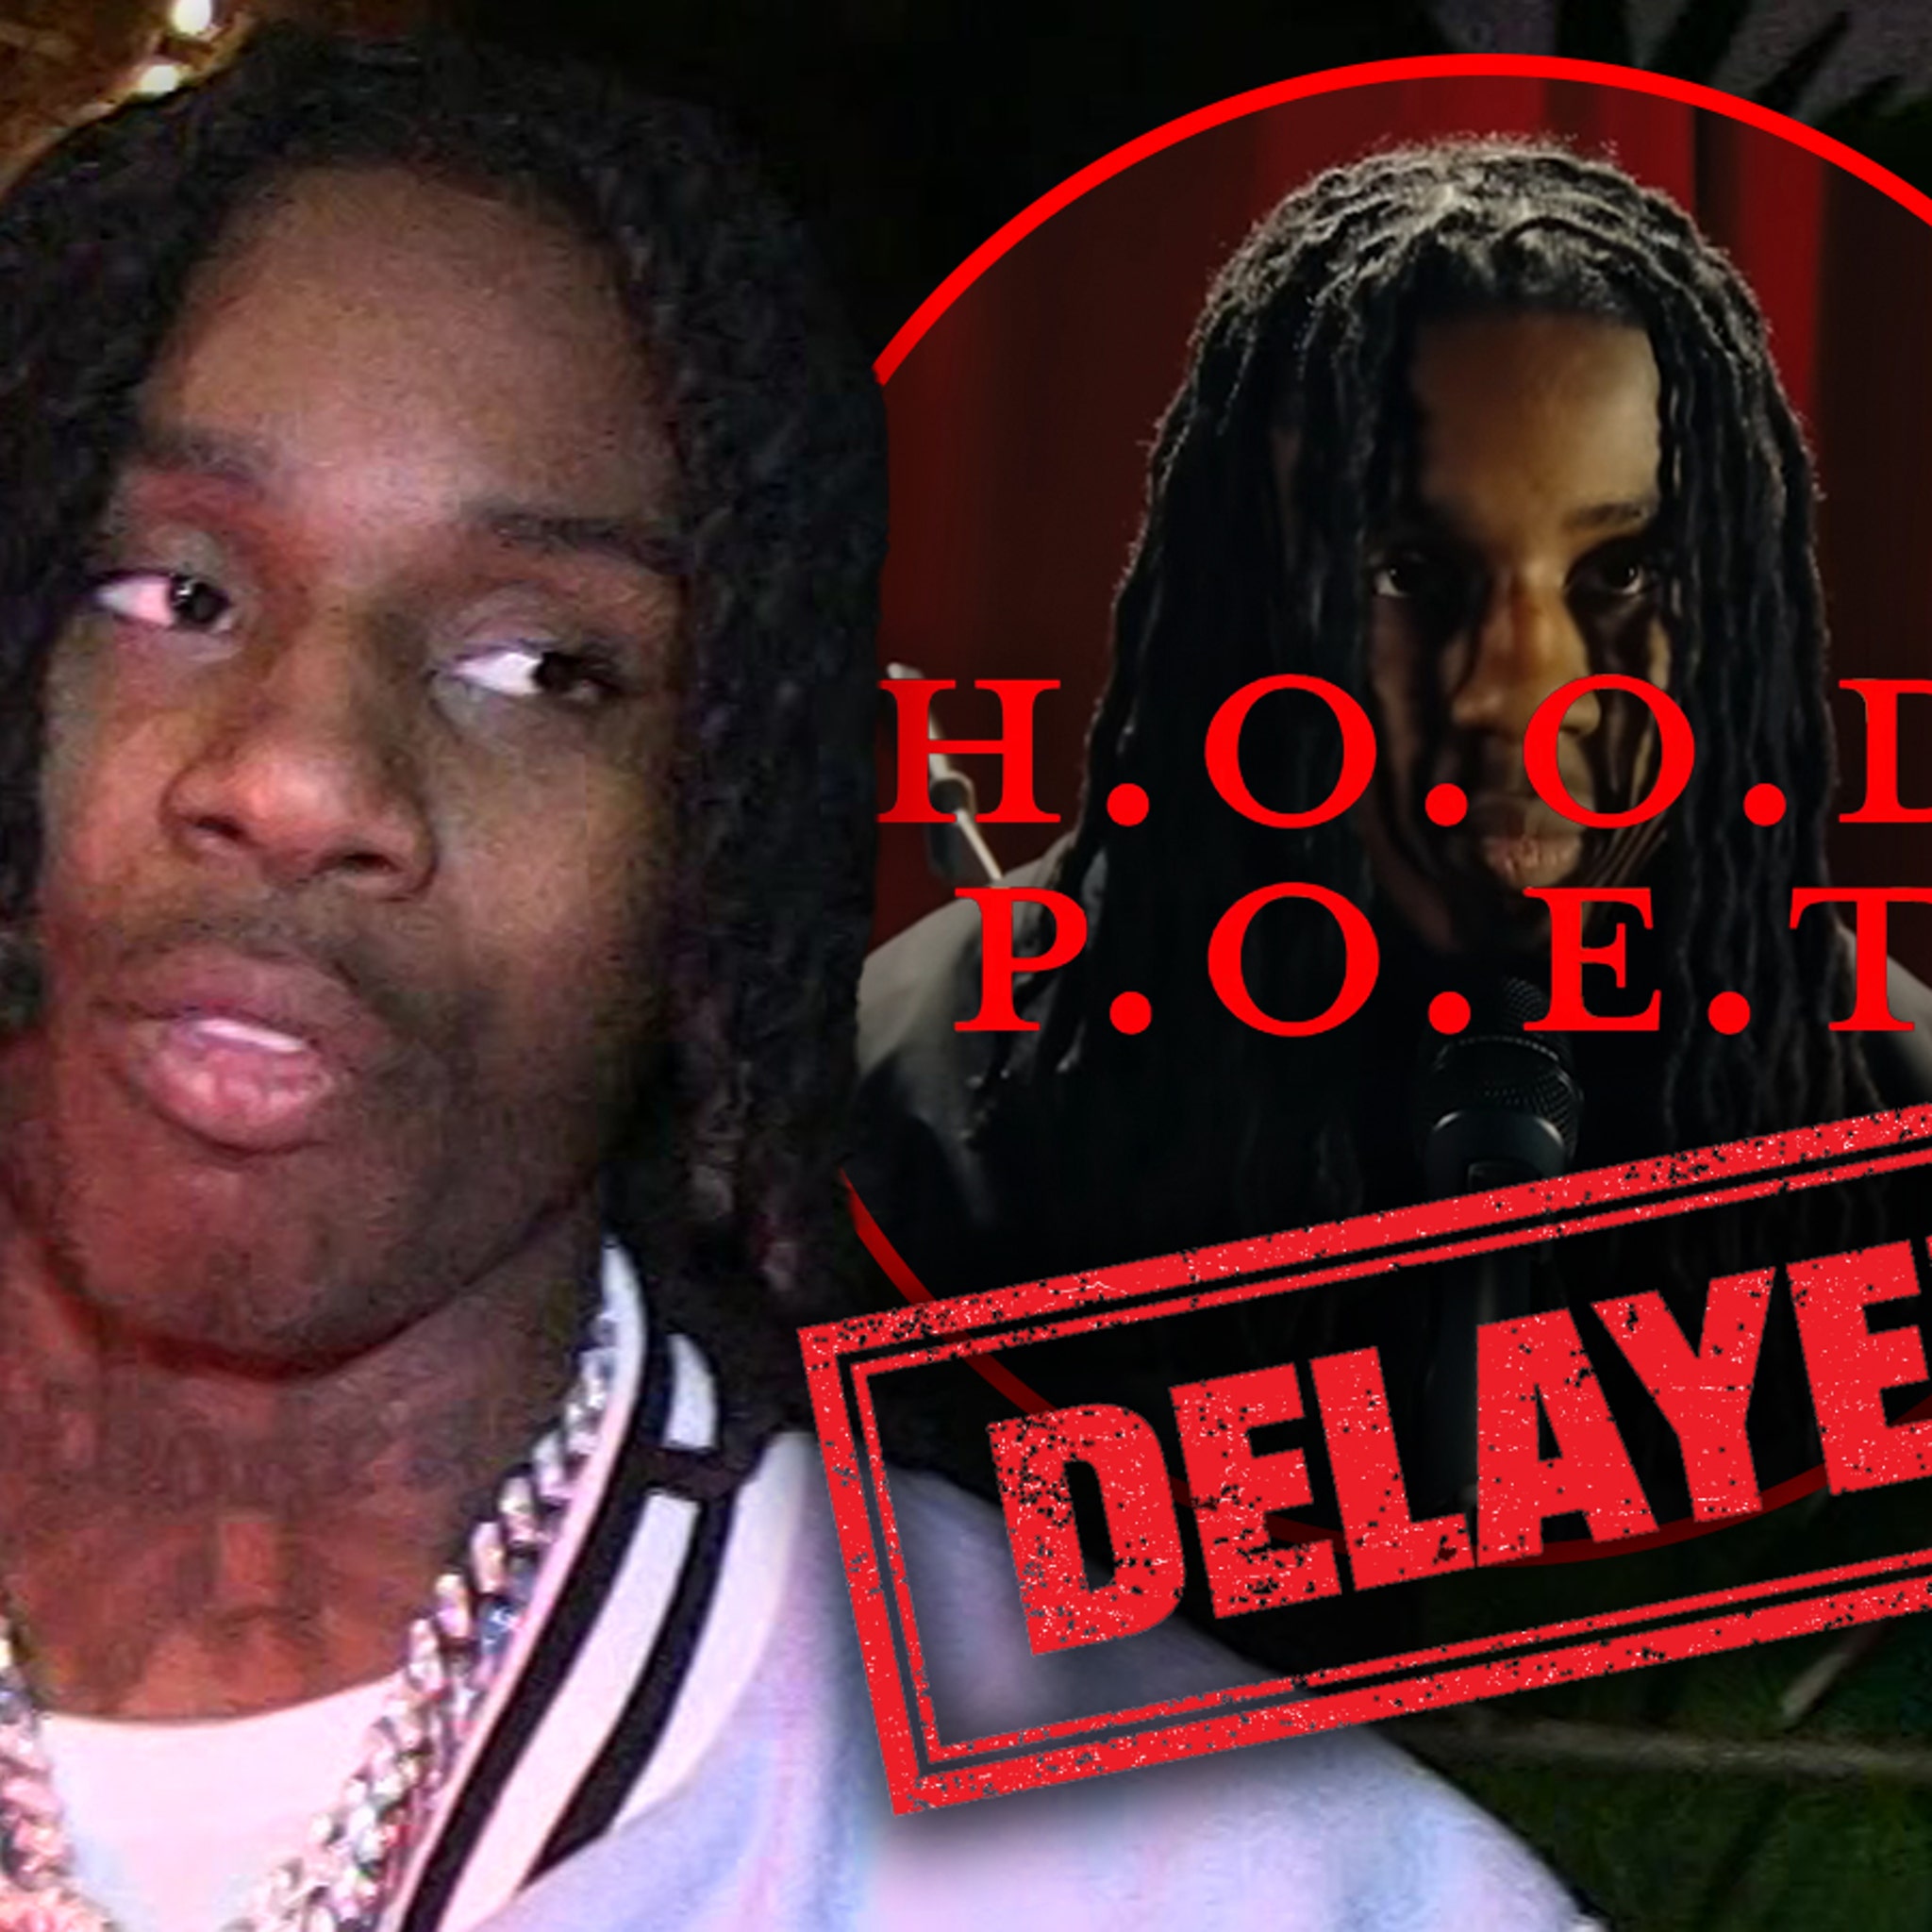 Polo G Announces New Album 'Hood Poet